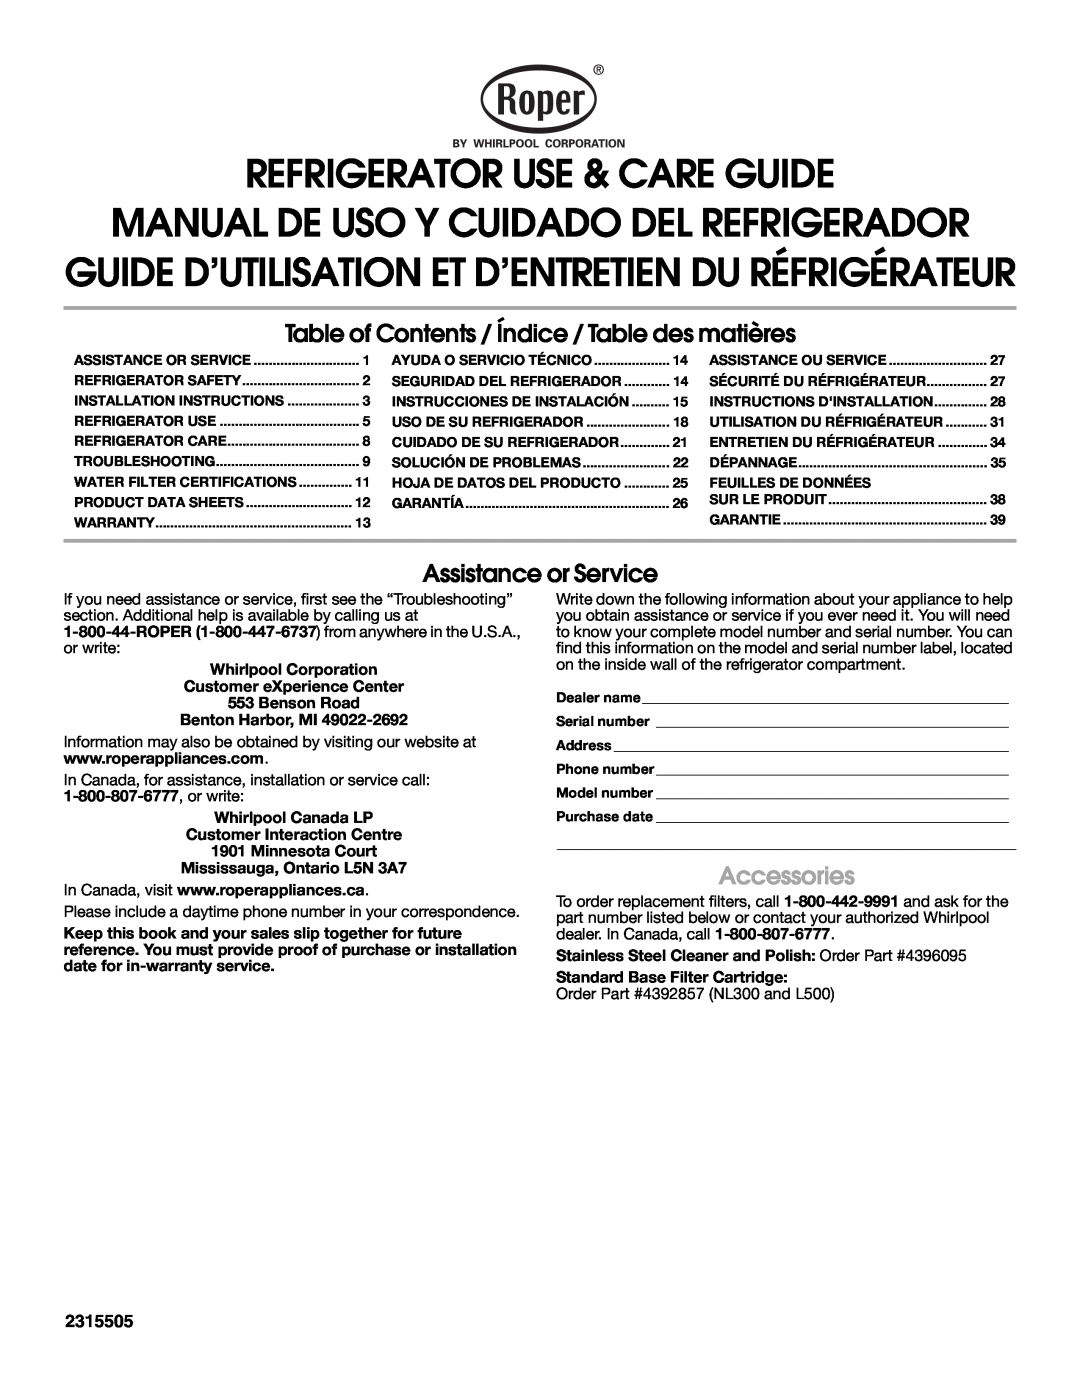 Whirlpool RS22AQXKQ00 warranty Refrigerator Use & Care Guide, Manual De Uso Y Cuidado Del Refrigerador, Accessories 